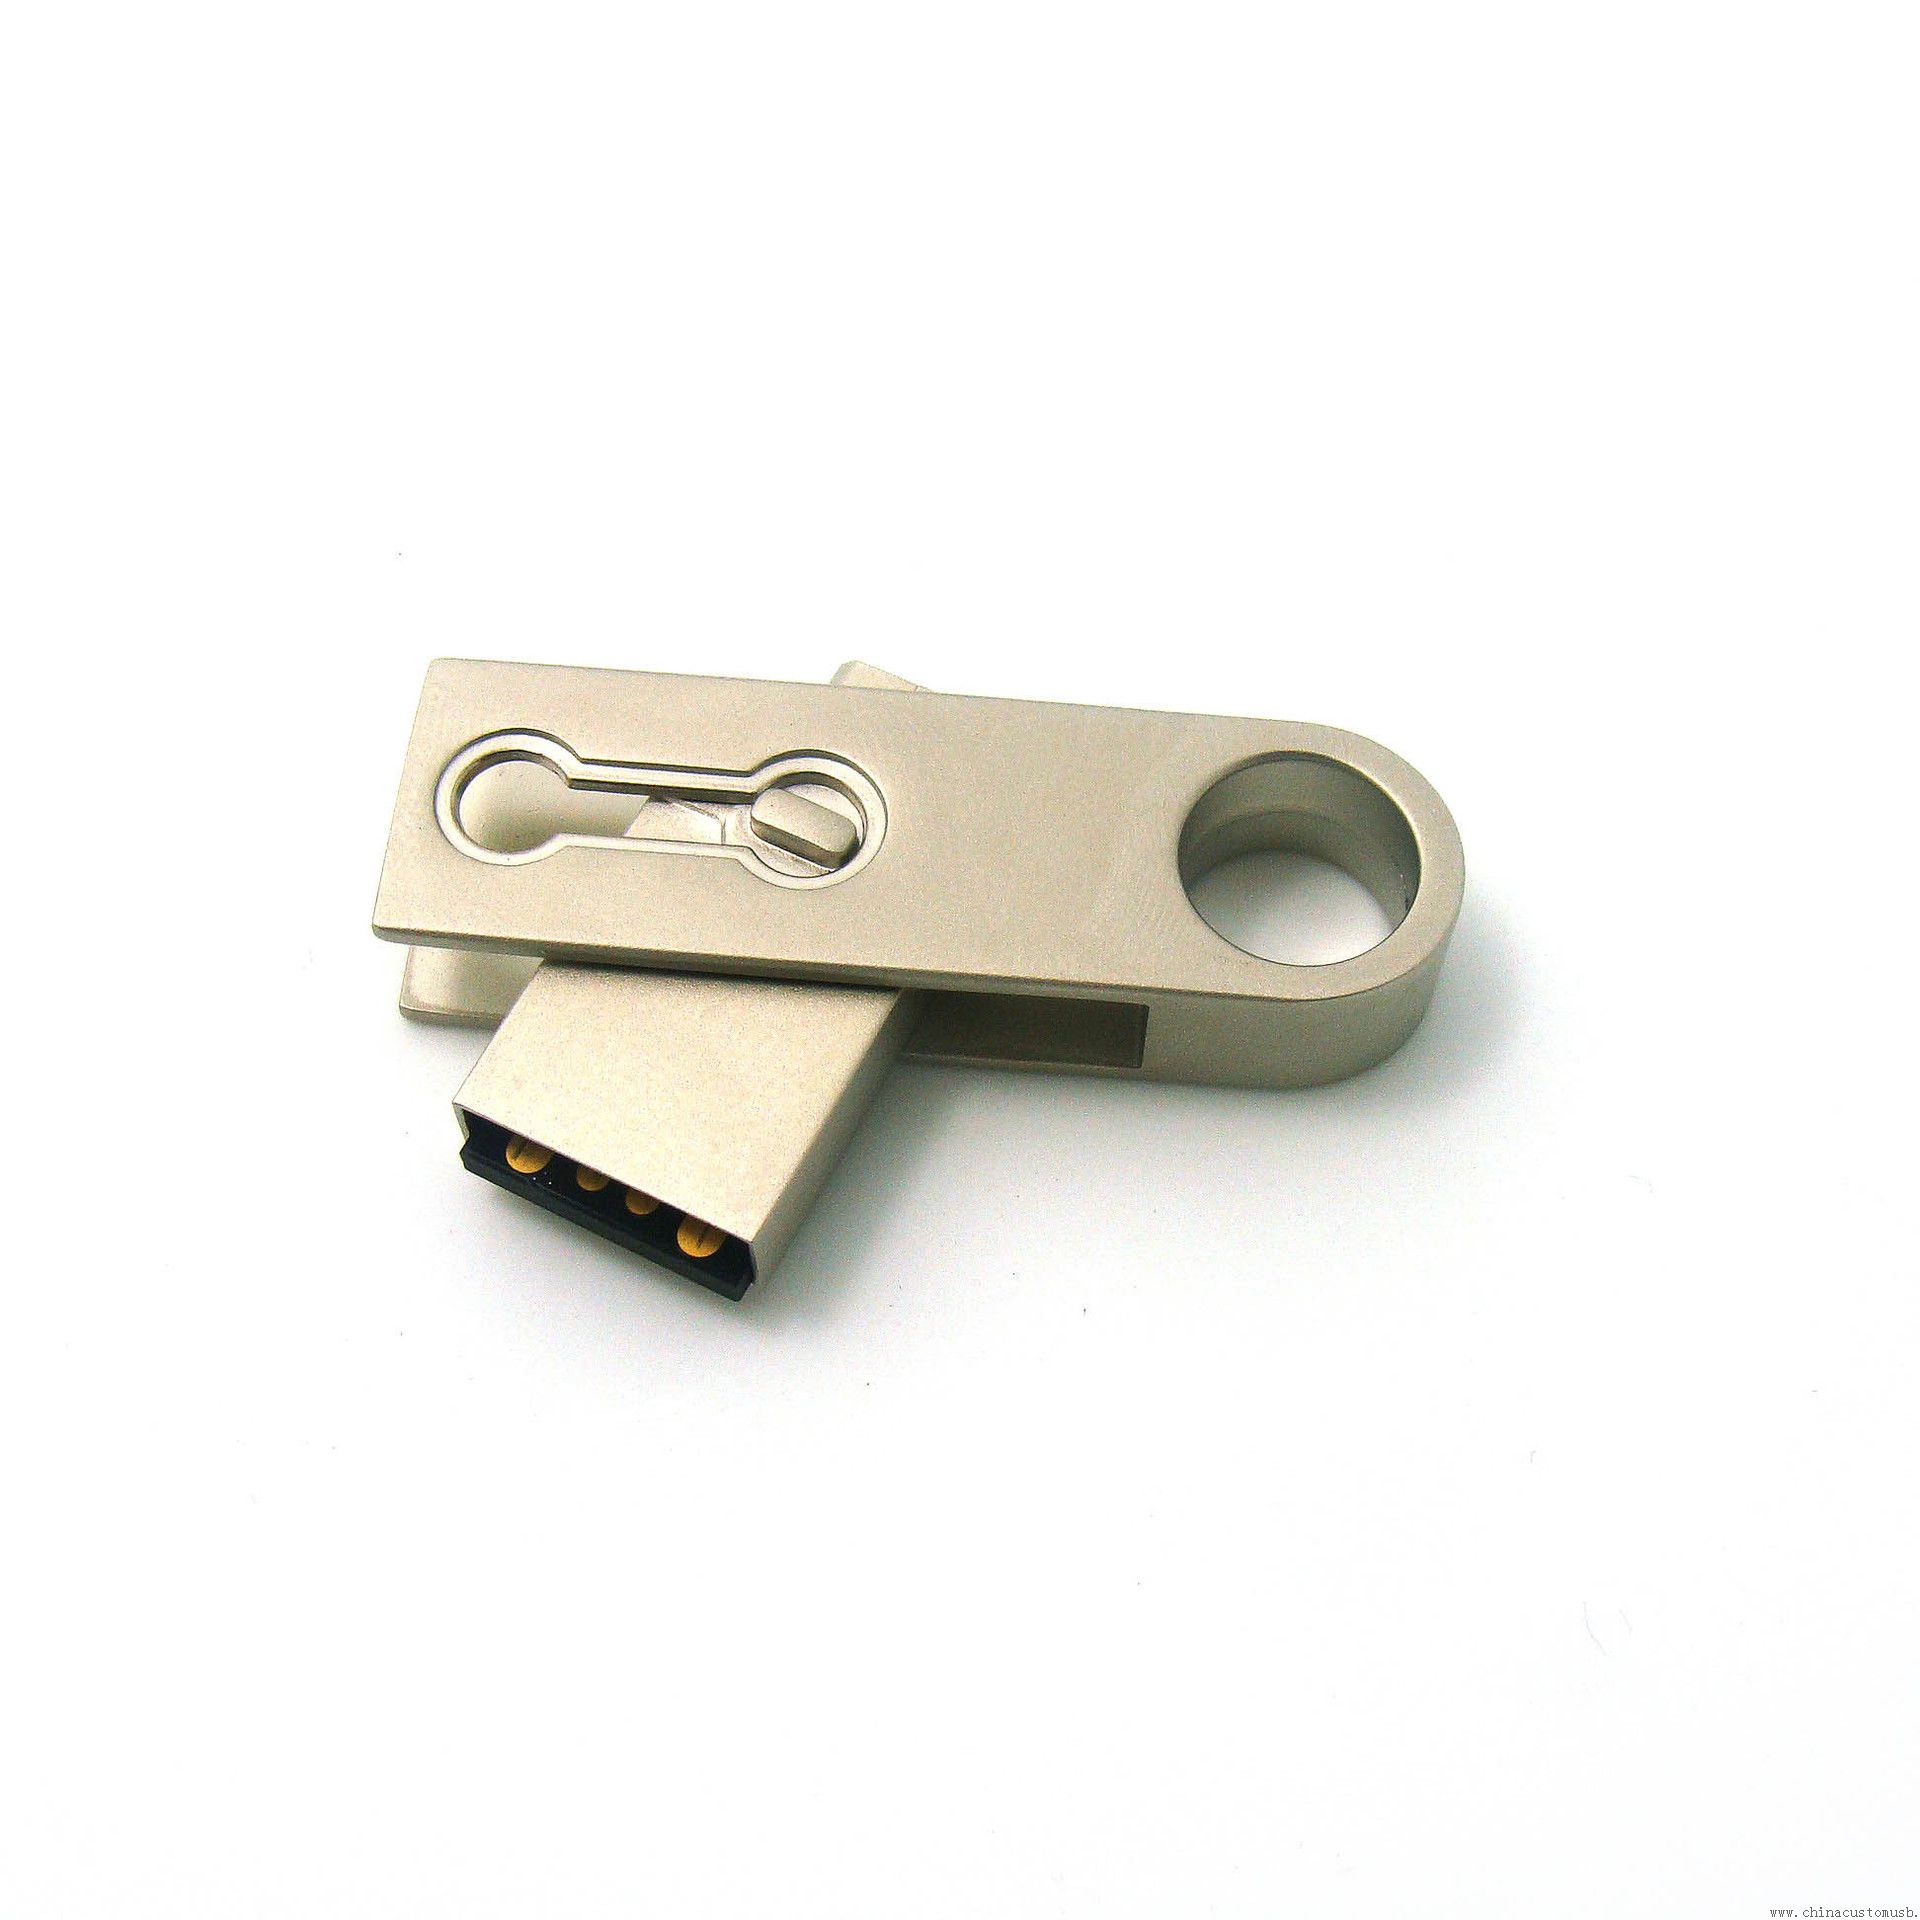 Metal OTG USB-muistitikku koukulla